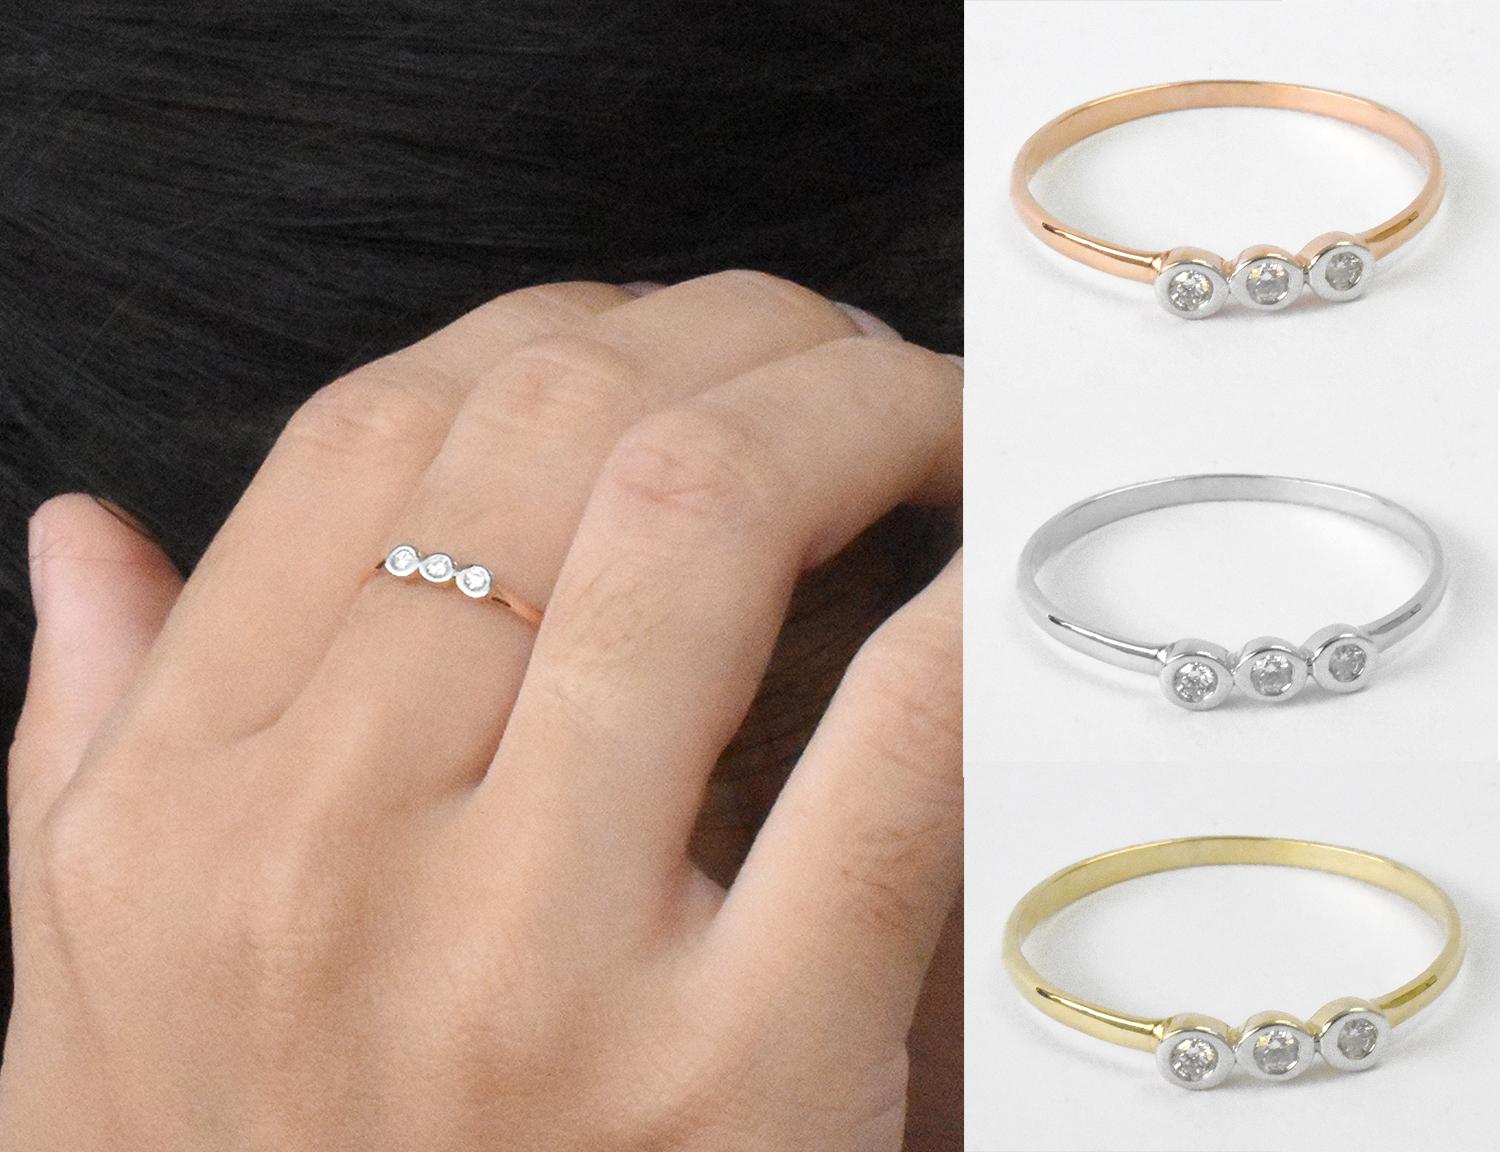 For Sale:  18k Gold Diamond 1.9 mm Ring Bezel Setting Three Diamond Ring Trio Diamond Ring 5